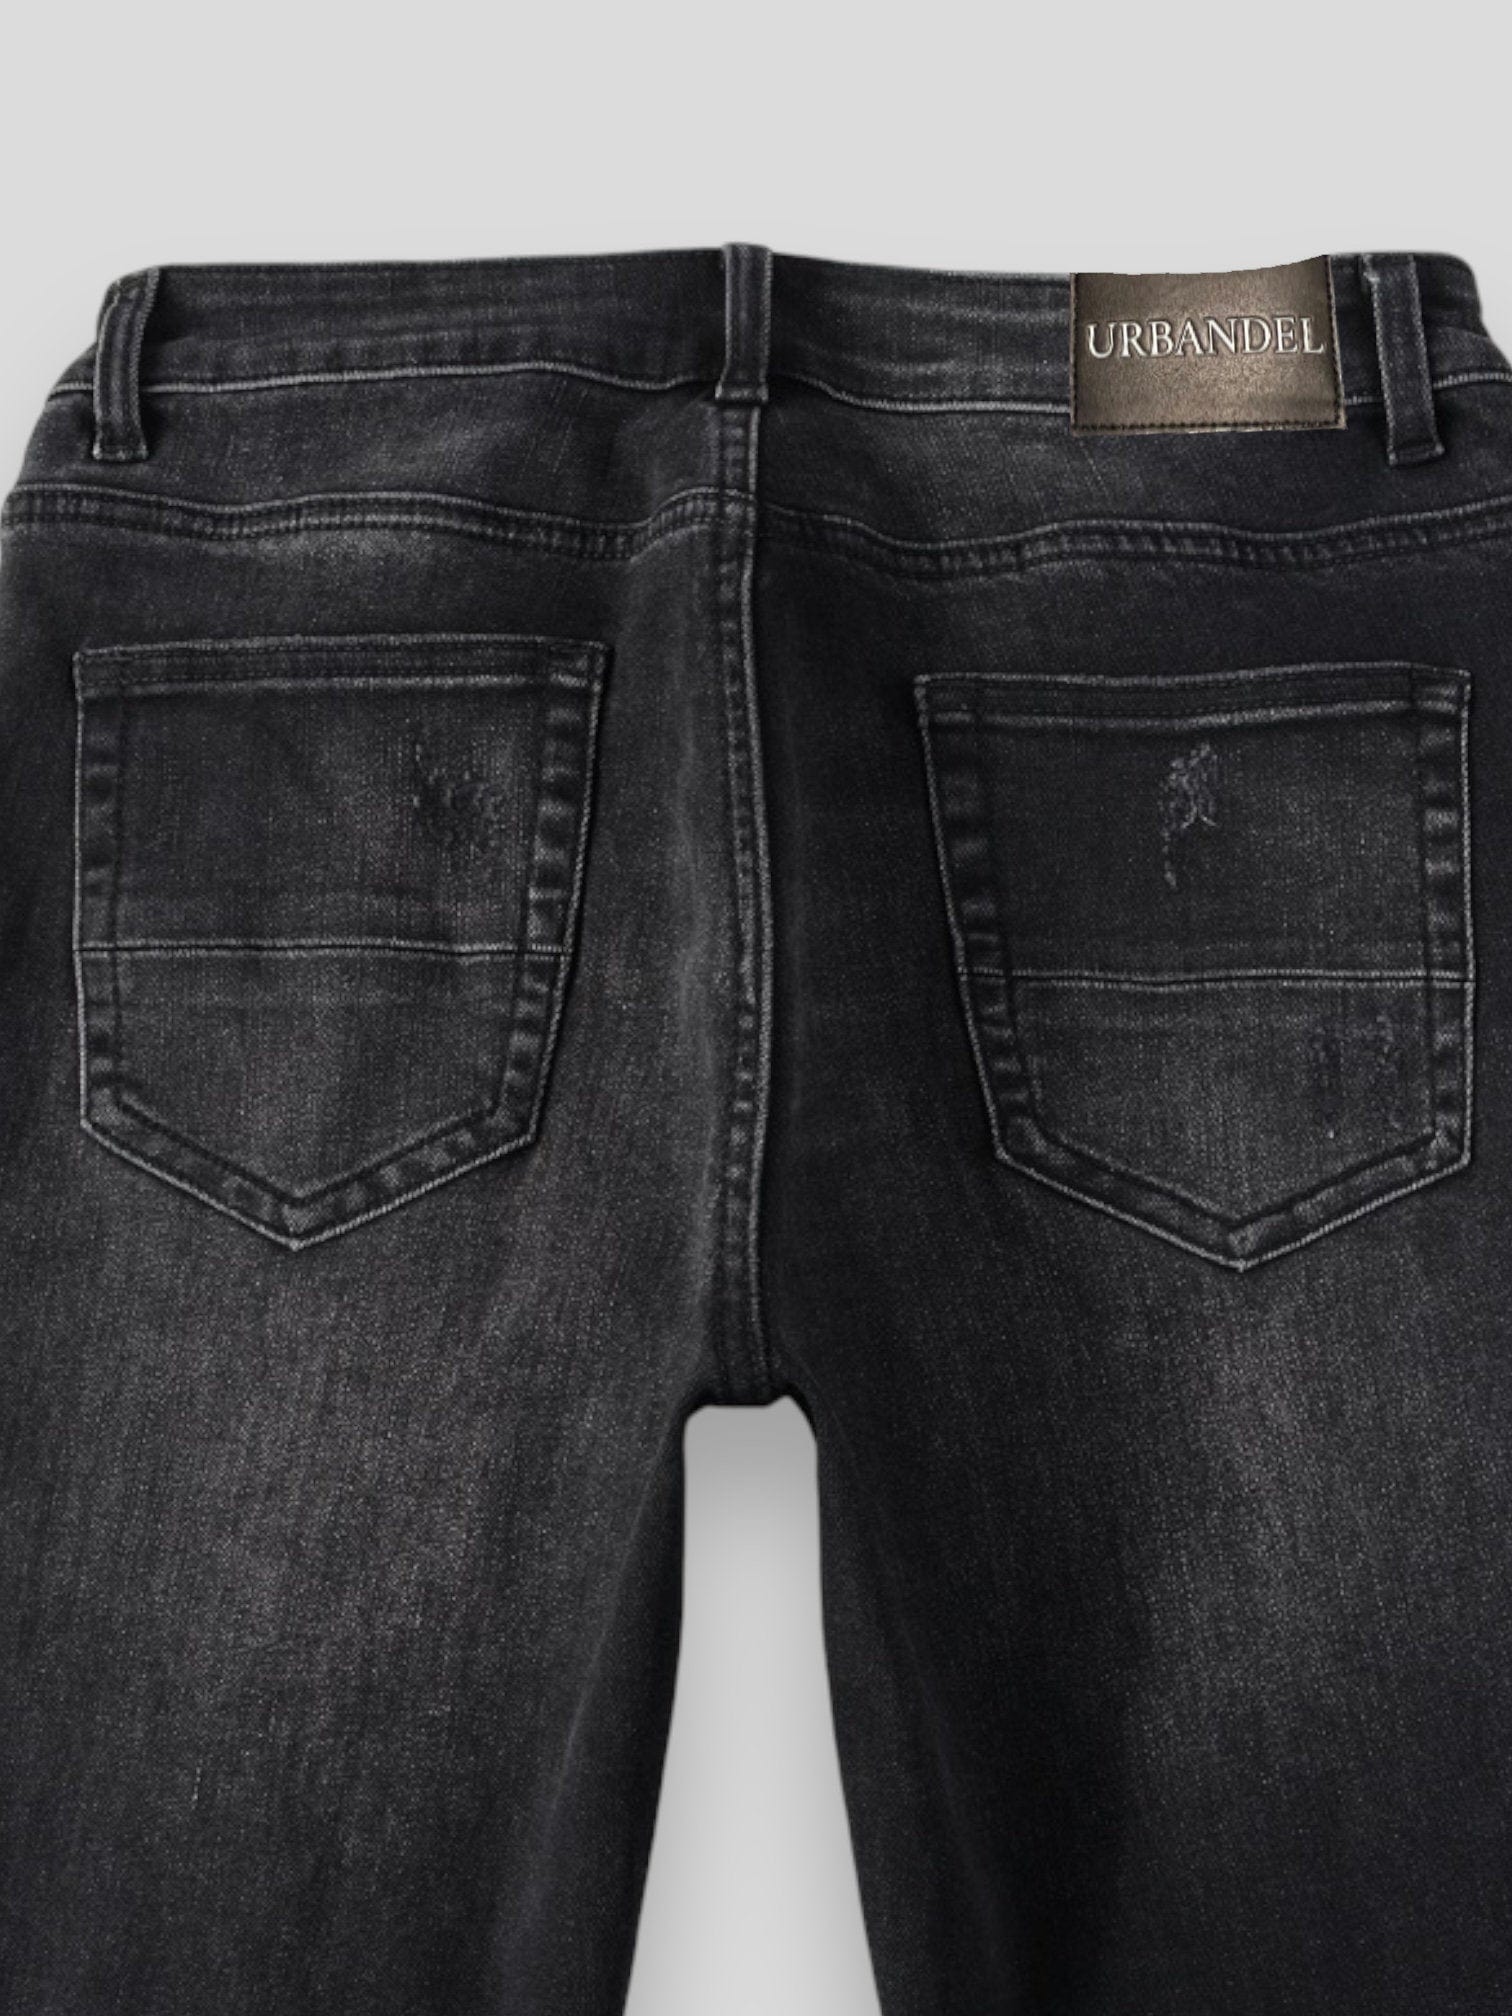 Urbandel pants Urbandel "The Last Front Star" Skinny Jeans